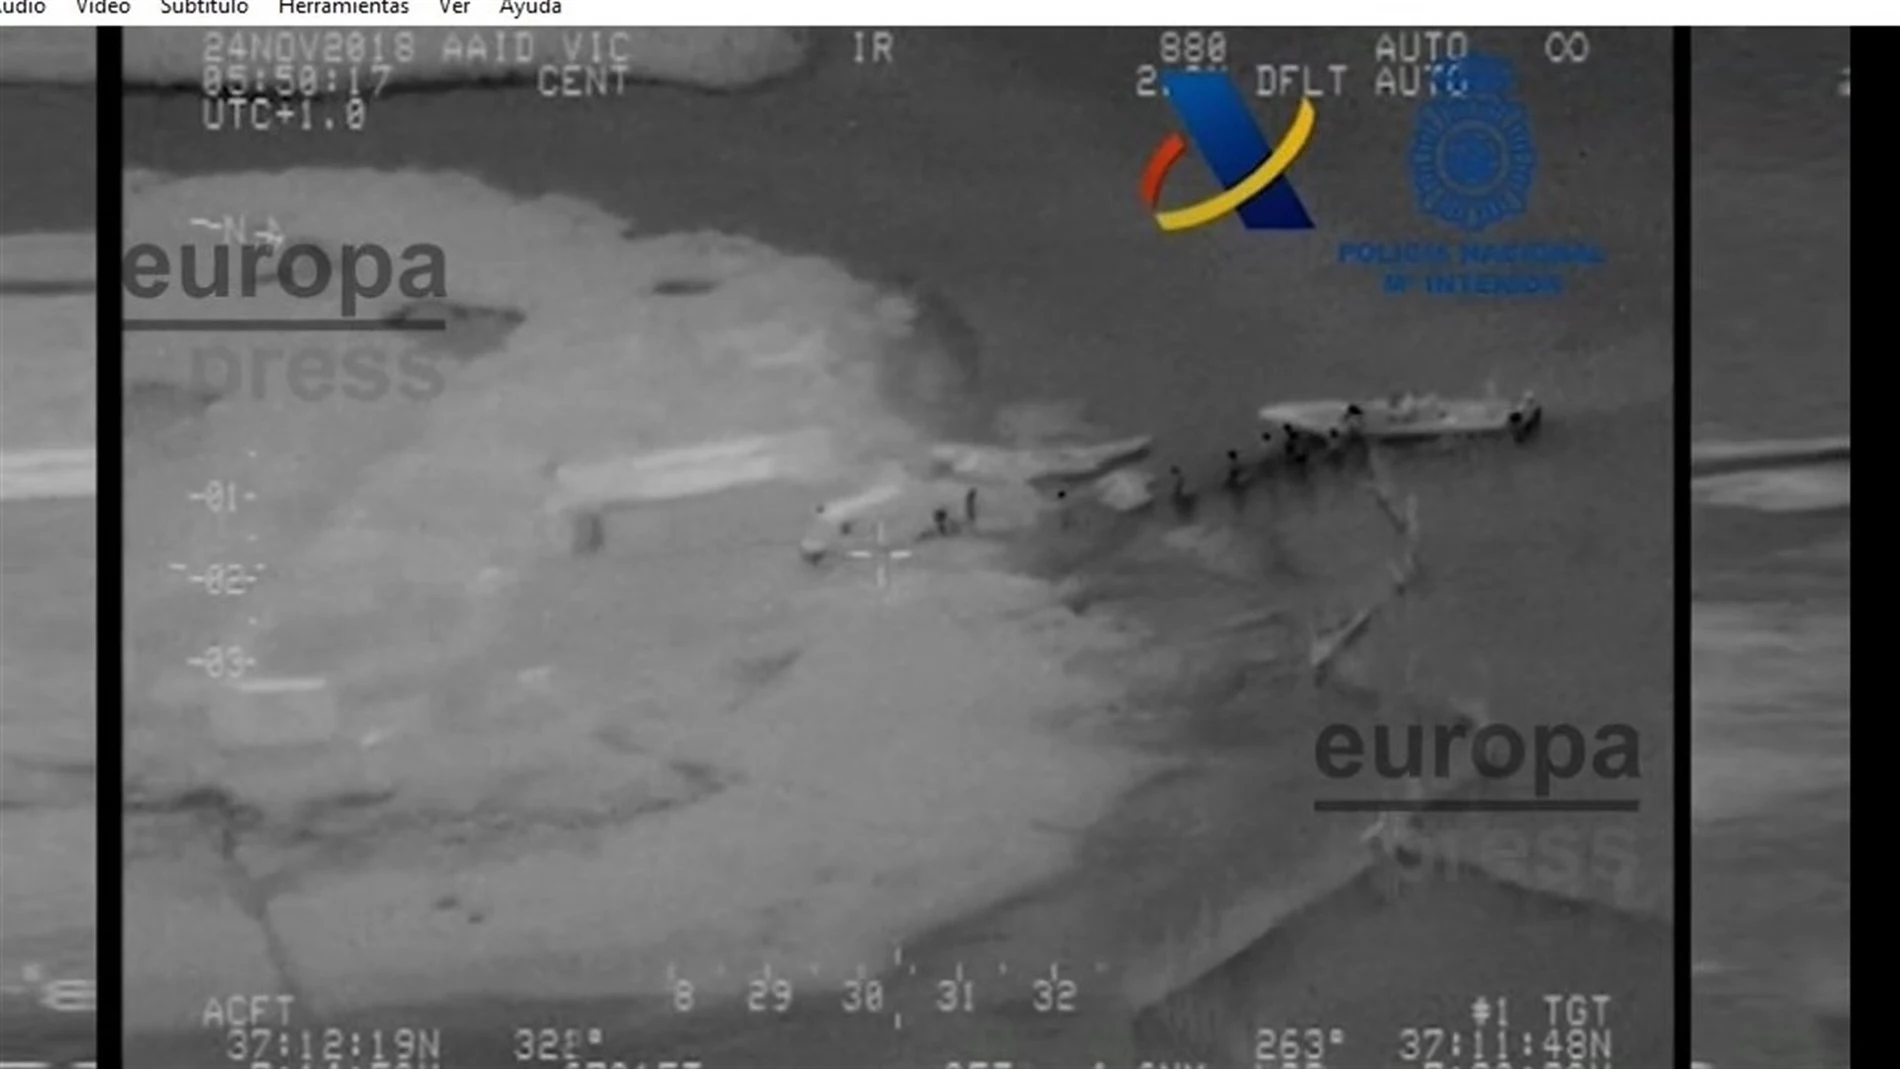 La operación se inició cuando las autoridades portuguesas informaron a las españolas de la existencia de una embarcación semirrígida, cargada con fardos de los utilizados para el transporte de droga, que se dirigía hacia la costa onubense / Foto: EP